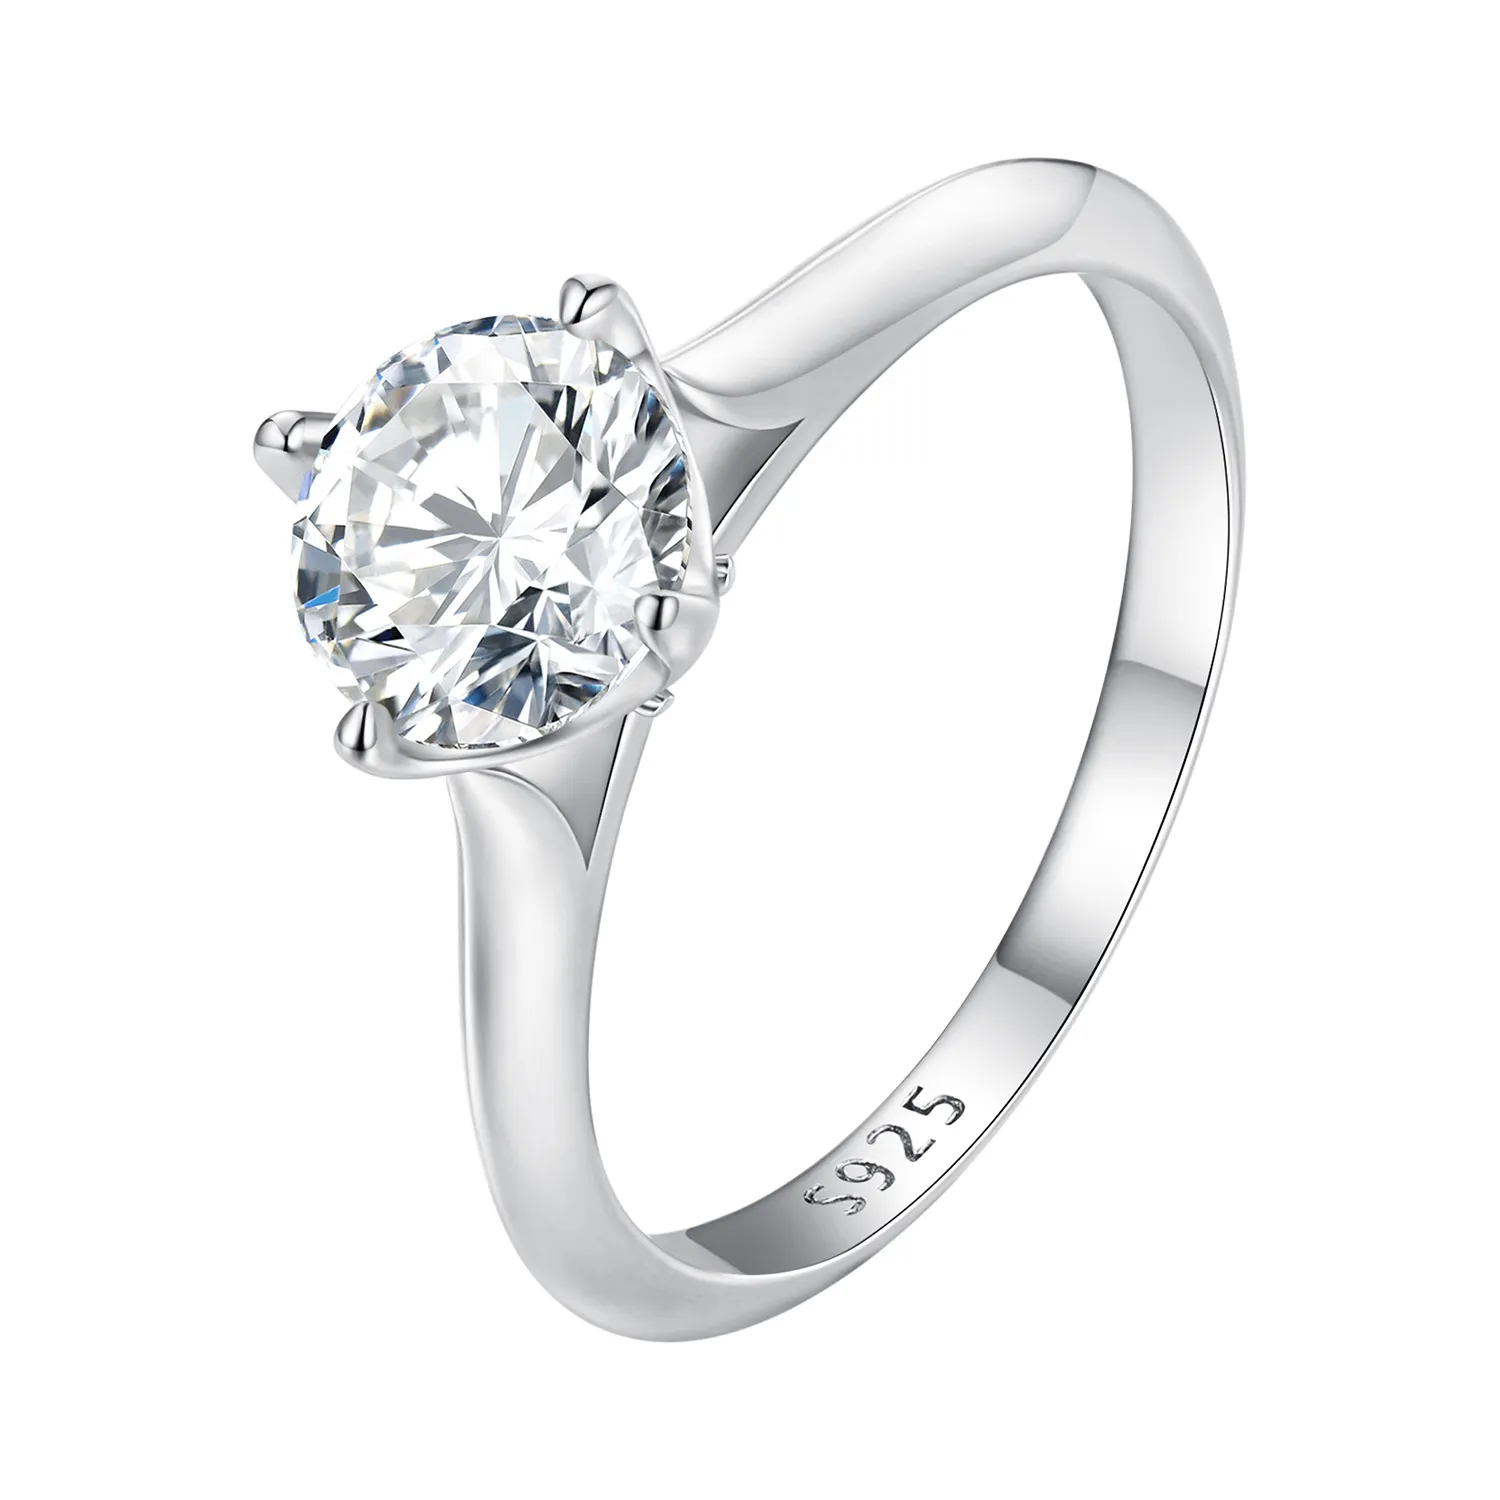 Pandora Style 1 Carat Moissanite Engagement Ring - MSR033